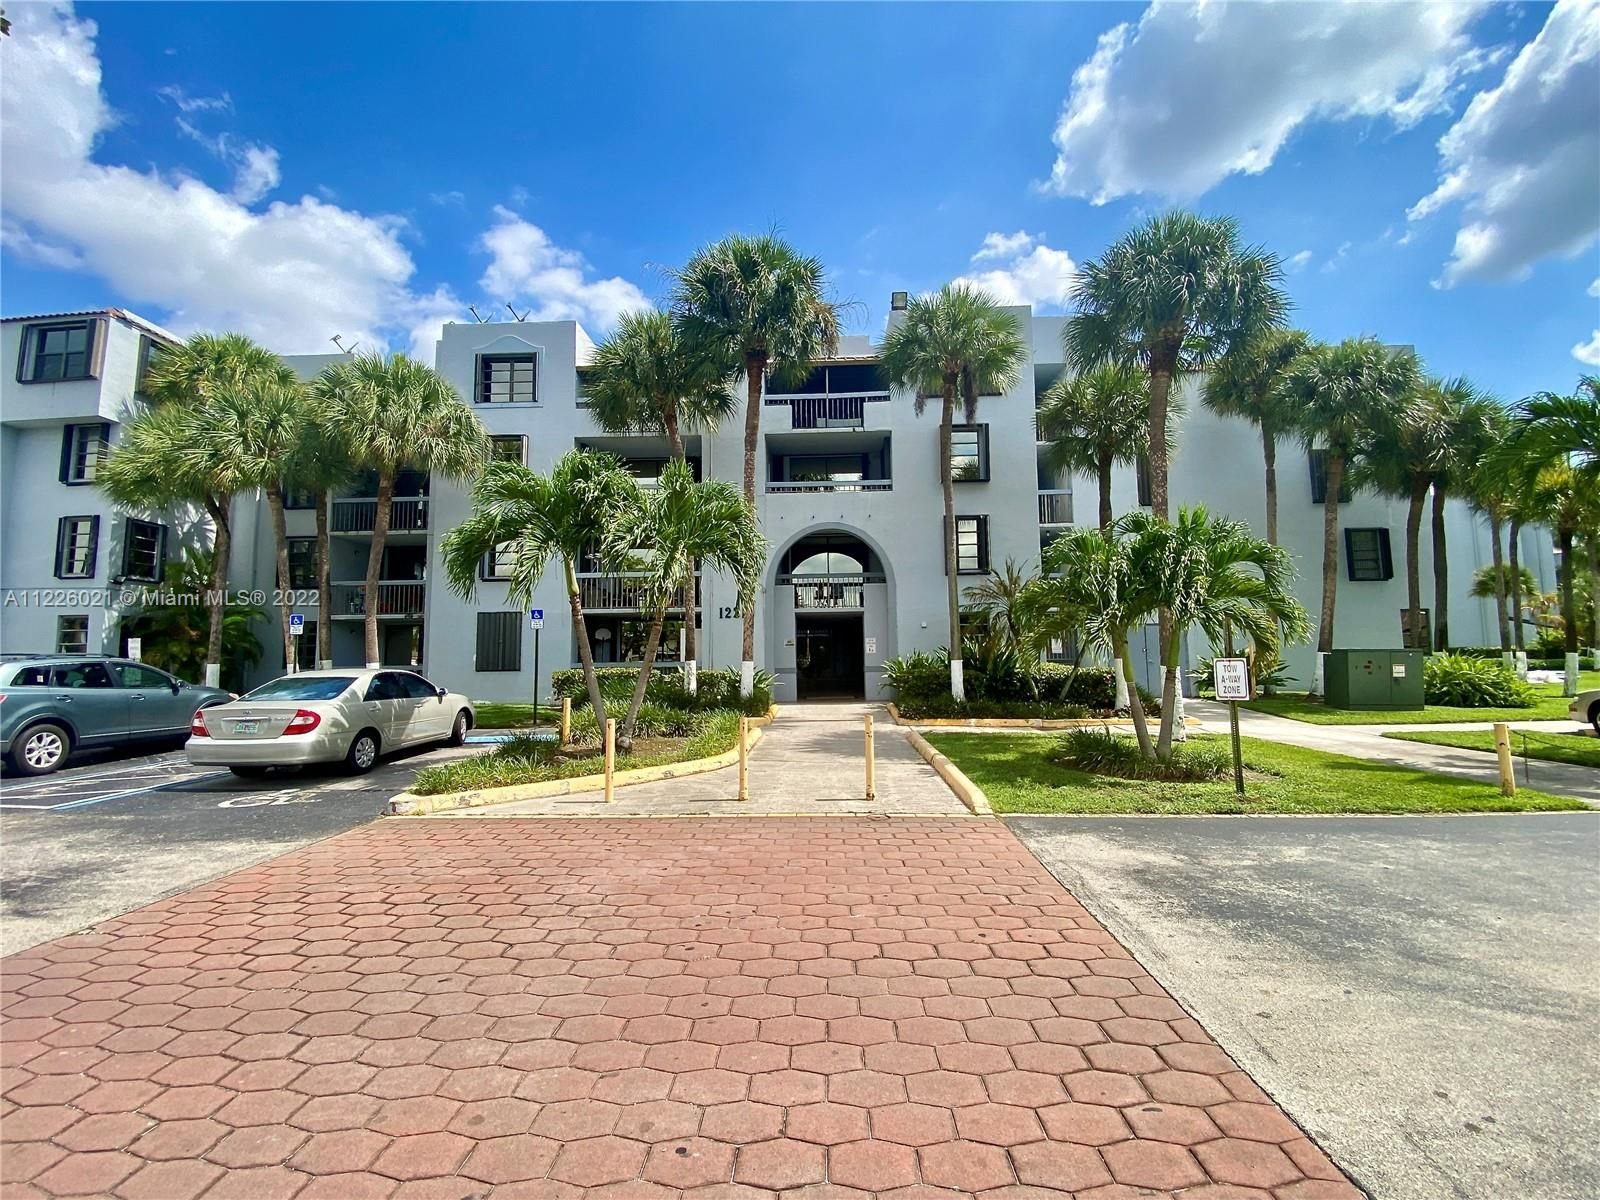 Real estate property located at 12219 14th Ln #2409, Miami-Dade County, Miami, FL